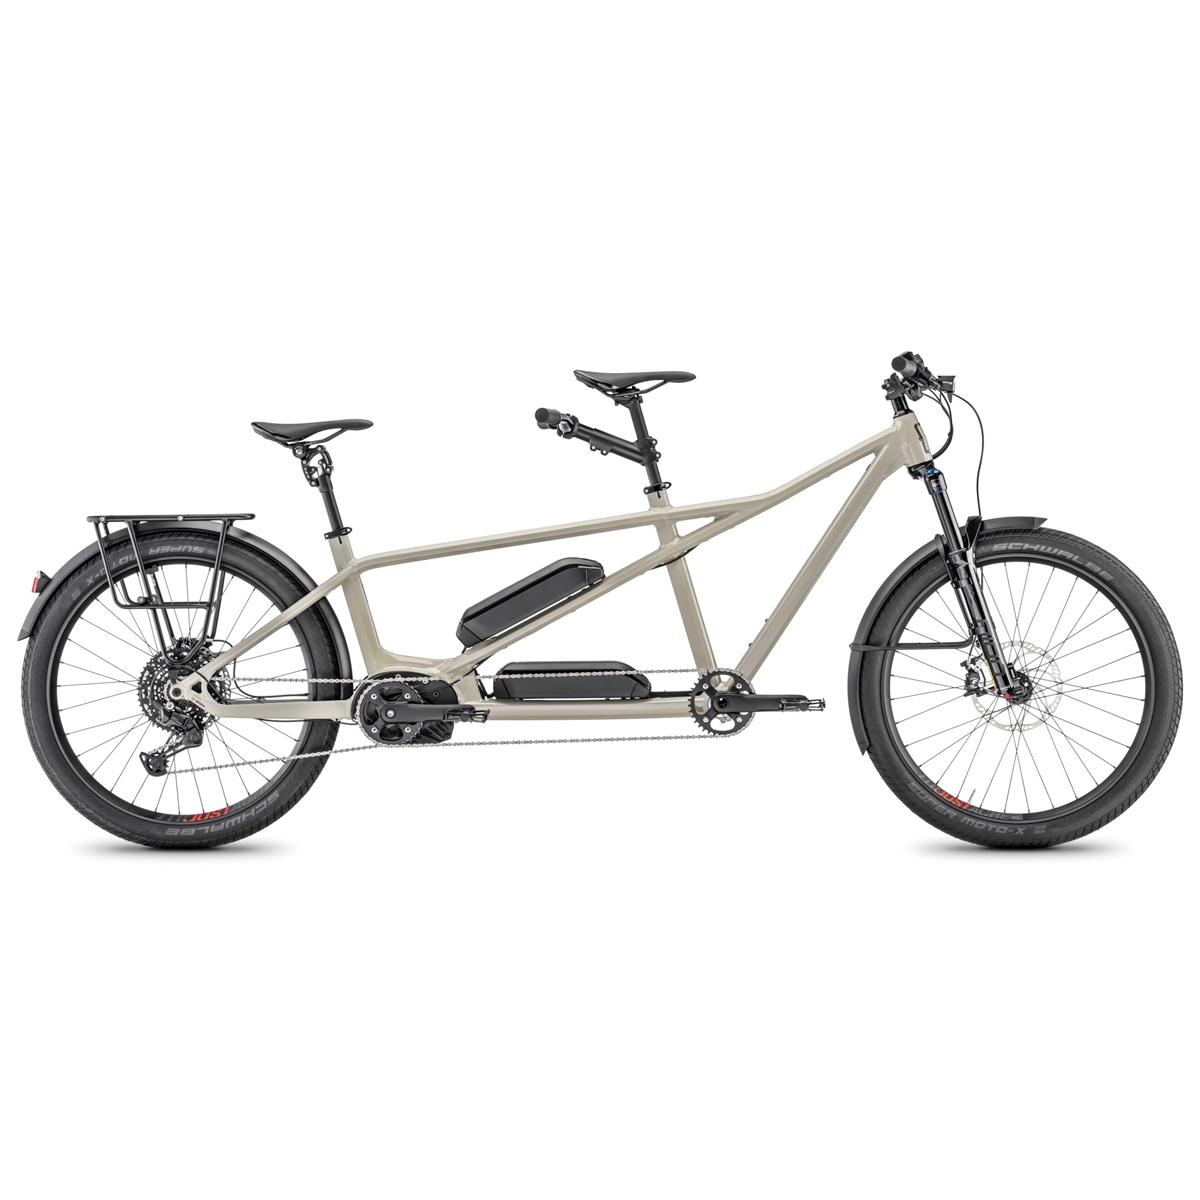 Tandem E-bike Samedi 27 X2 TRK 27.5 140mm 11v 545+545Wh Bosch Performance Line CX Smart Taglia M/L